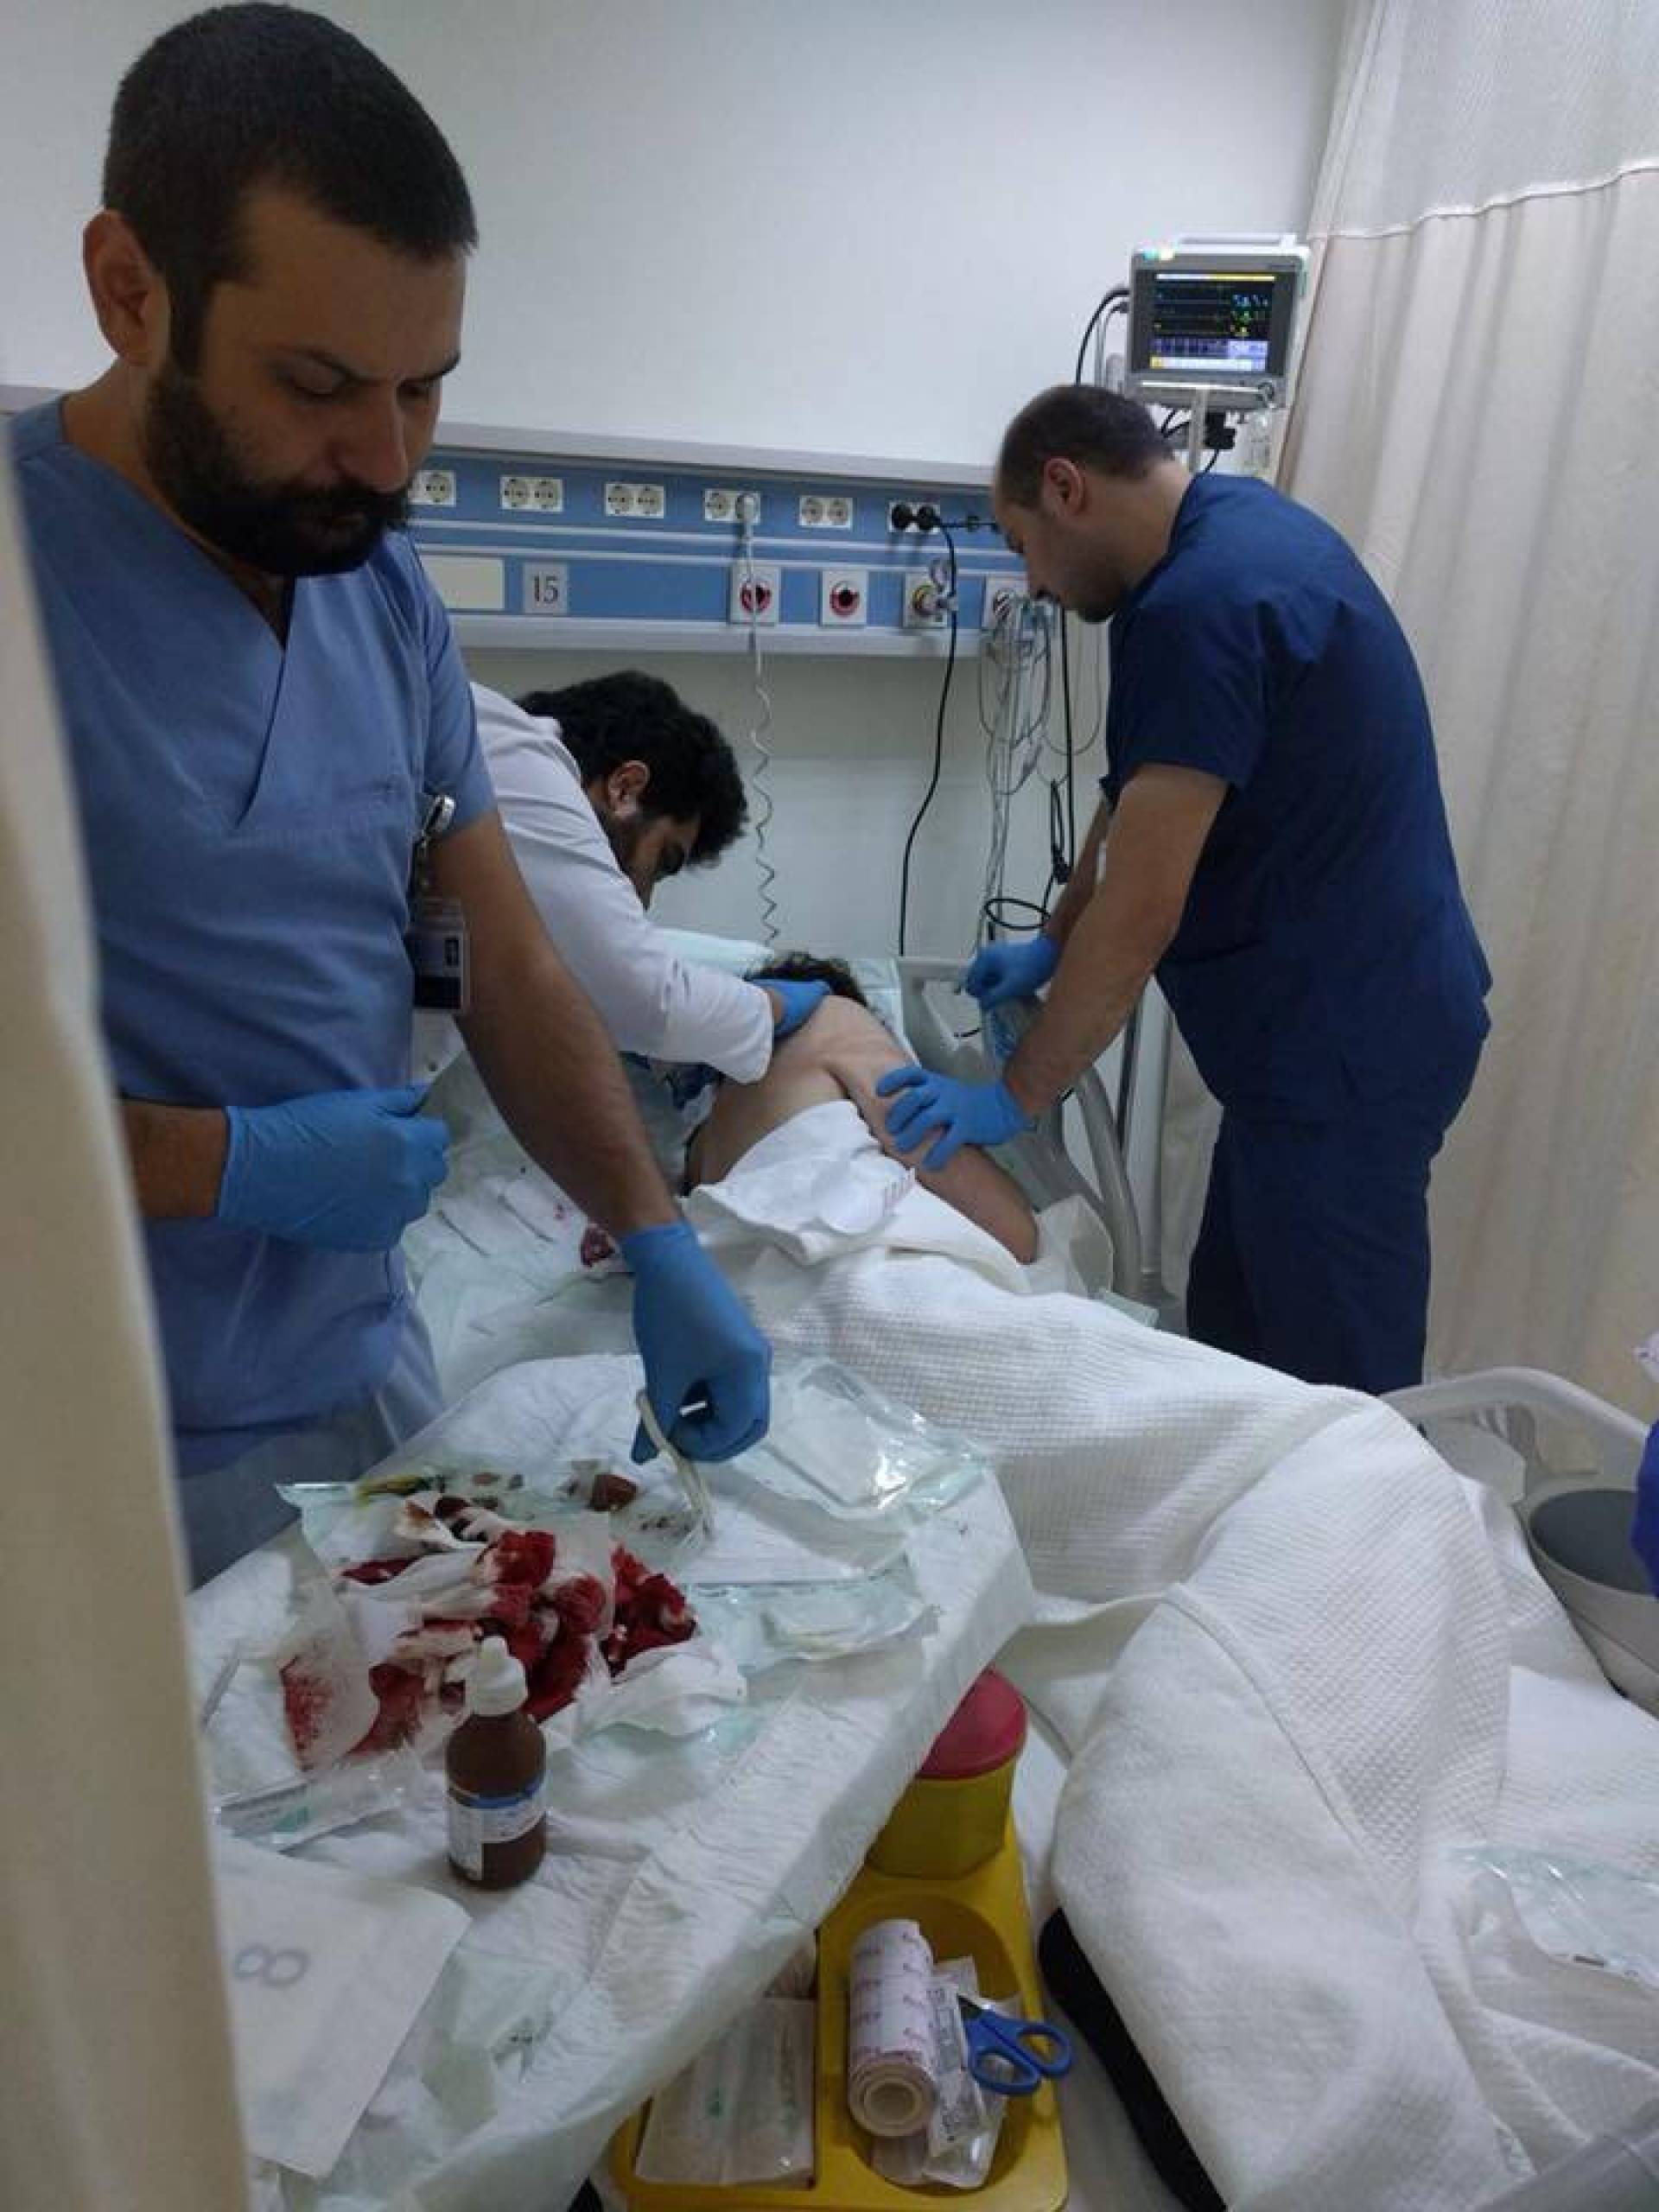 بالصور - نجمة سورية في غرفة العمليات بعد قصة زواج وانفصال مأساوية!